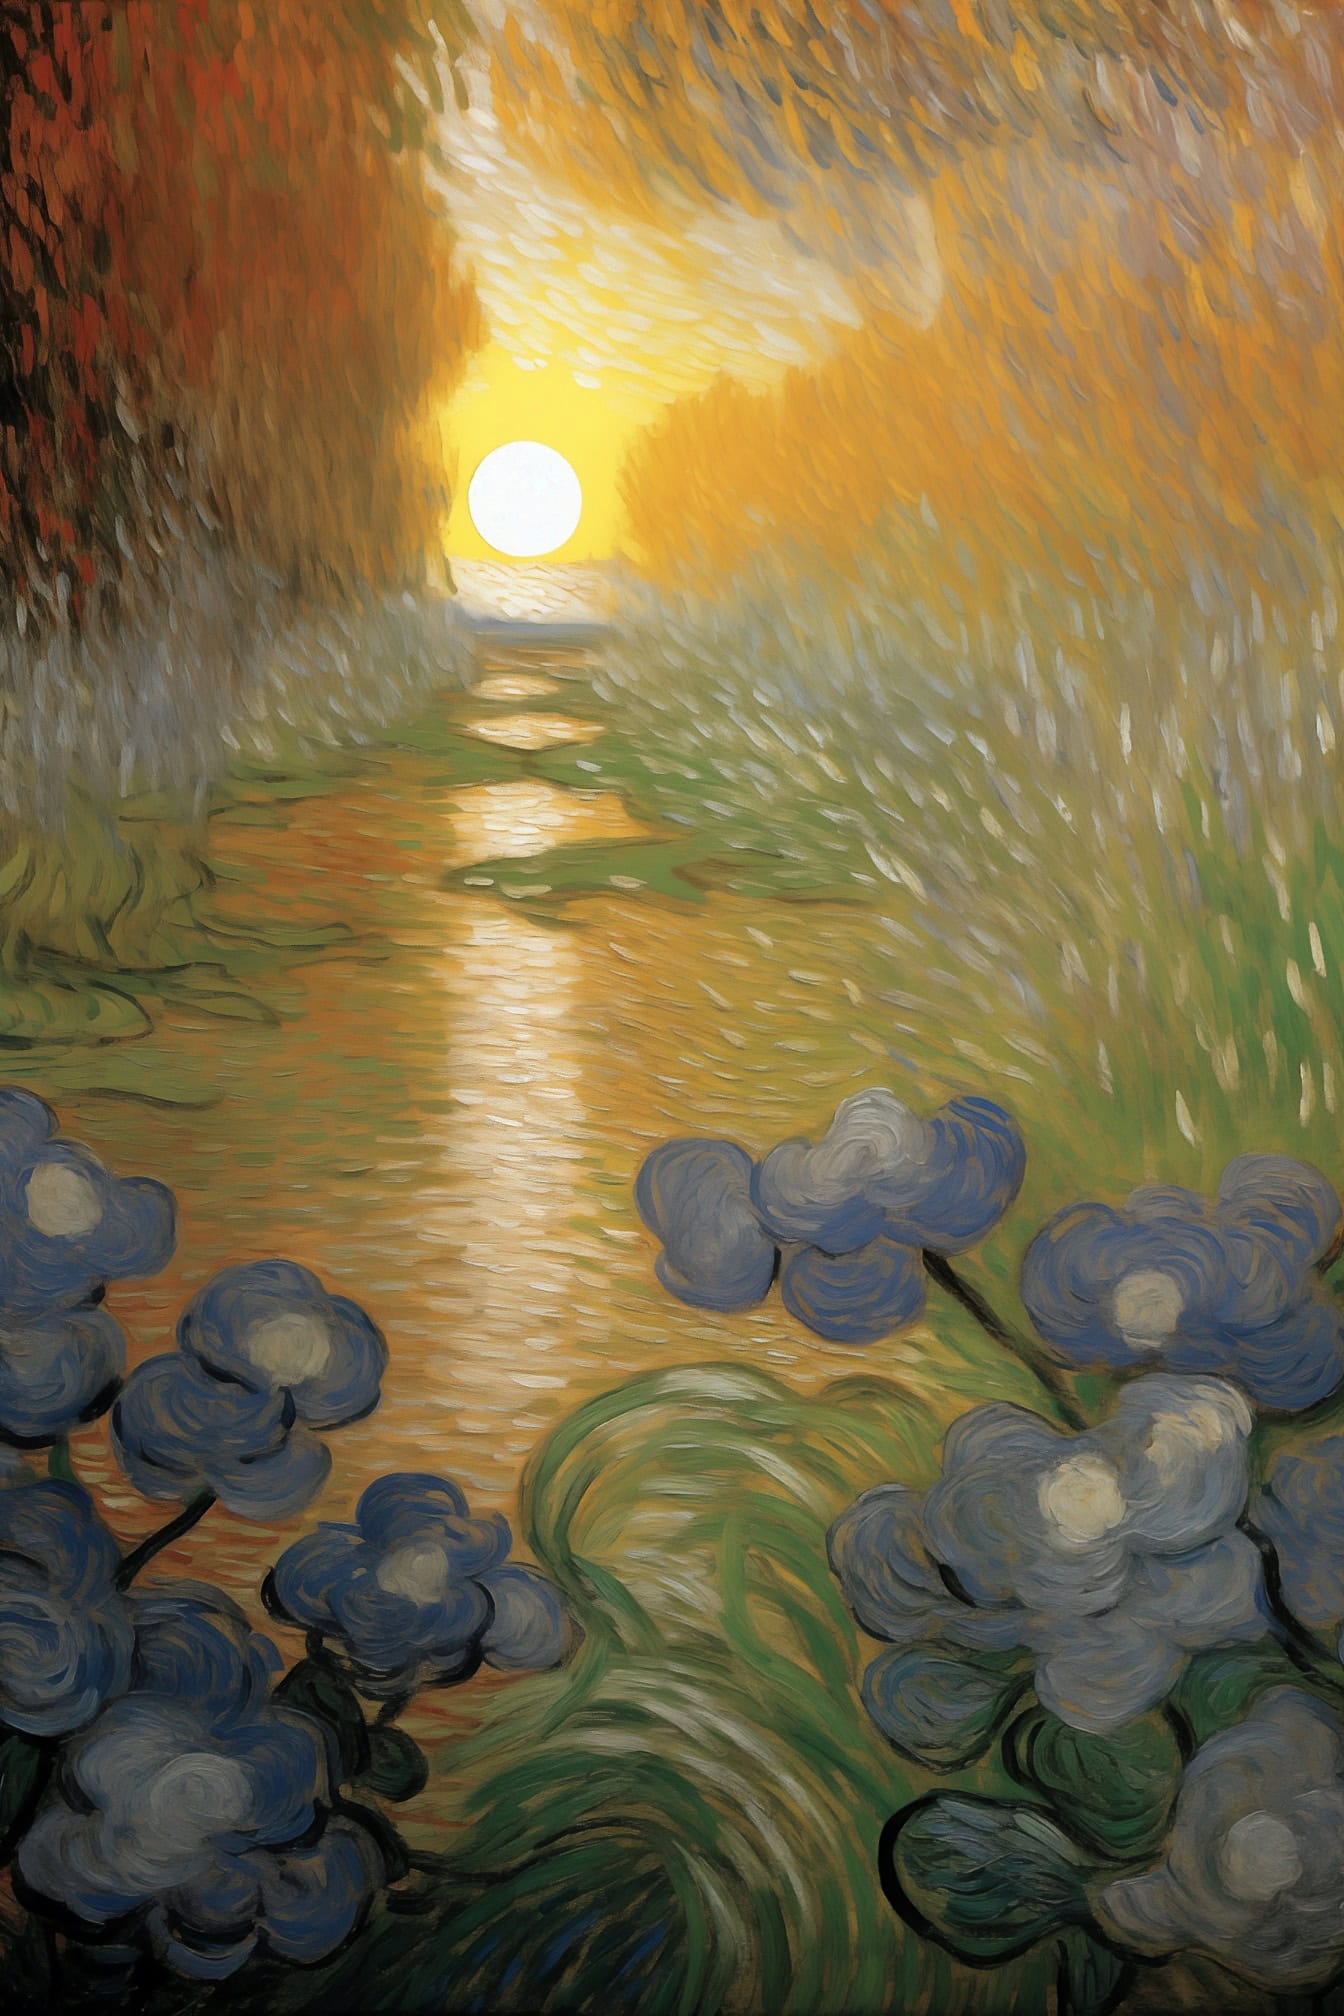 Ölgemälde von Blumen und Wasser bei Sonnenuntergang im Stil des berühmten Künstlers Van Gogh